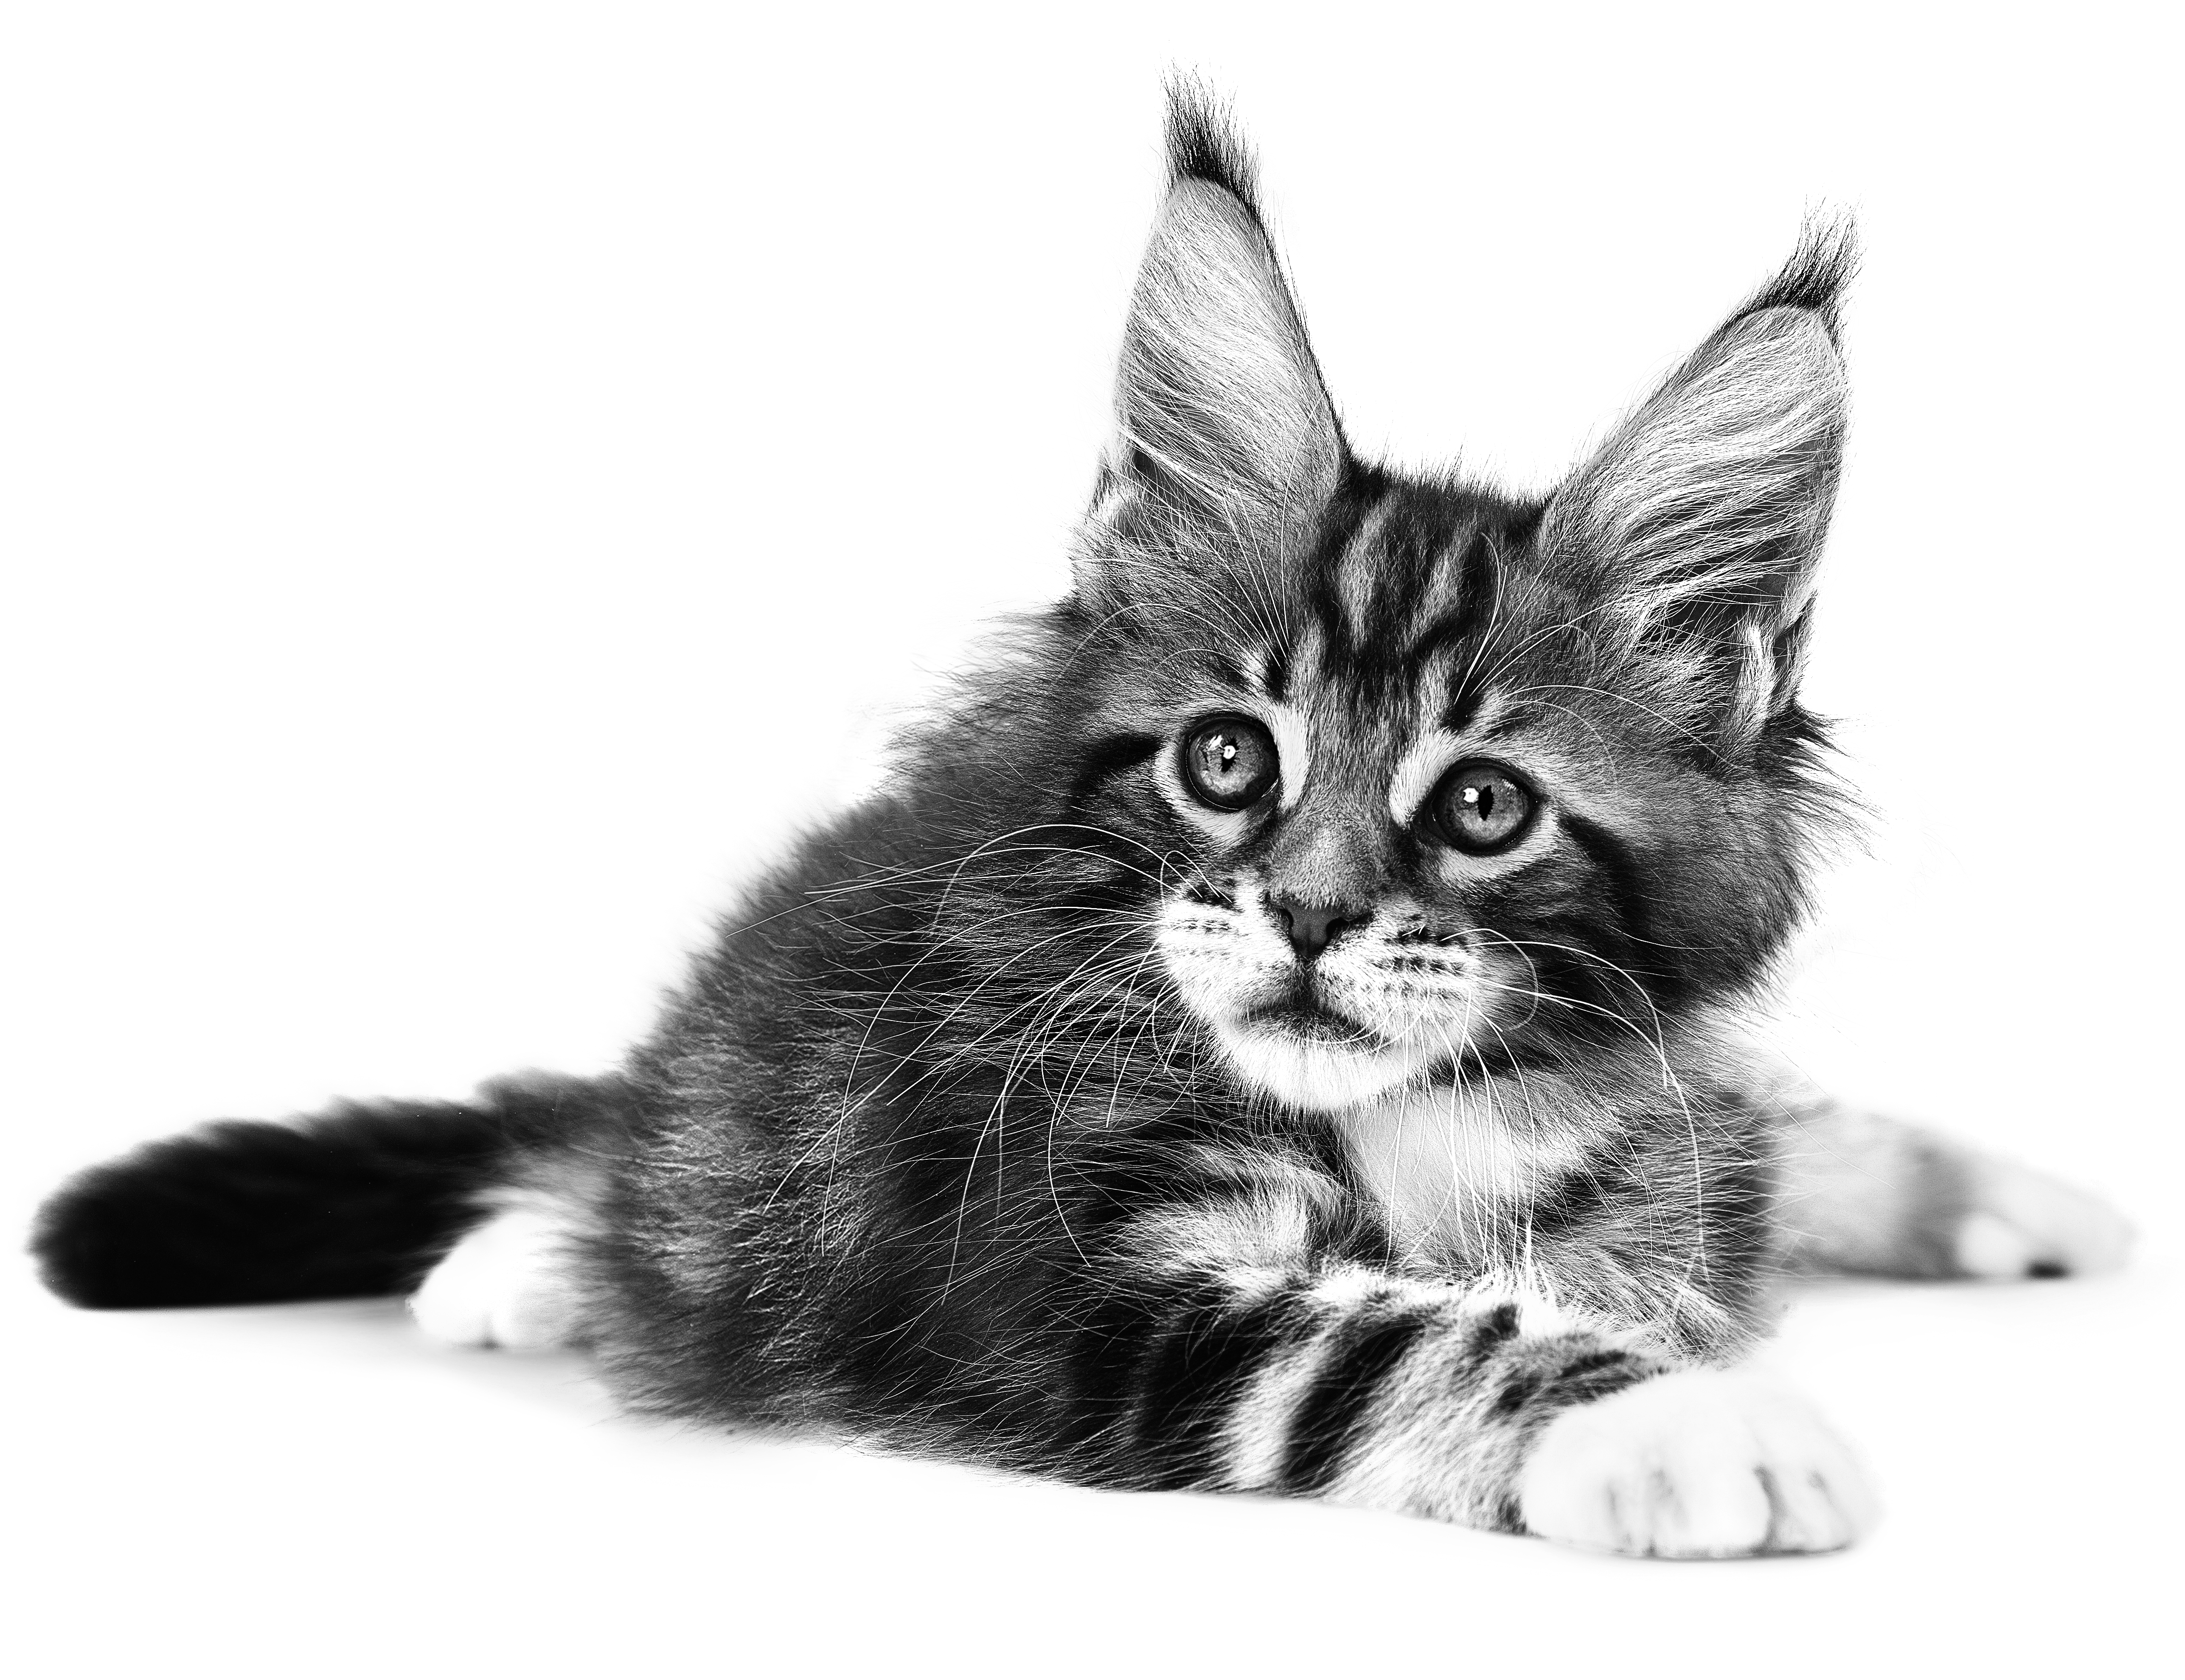 Gattino di Maine Coon sdraiato in bianco e nero su sfondo bianco